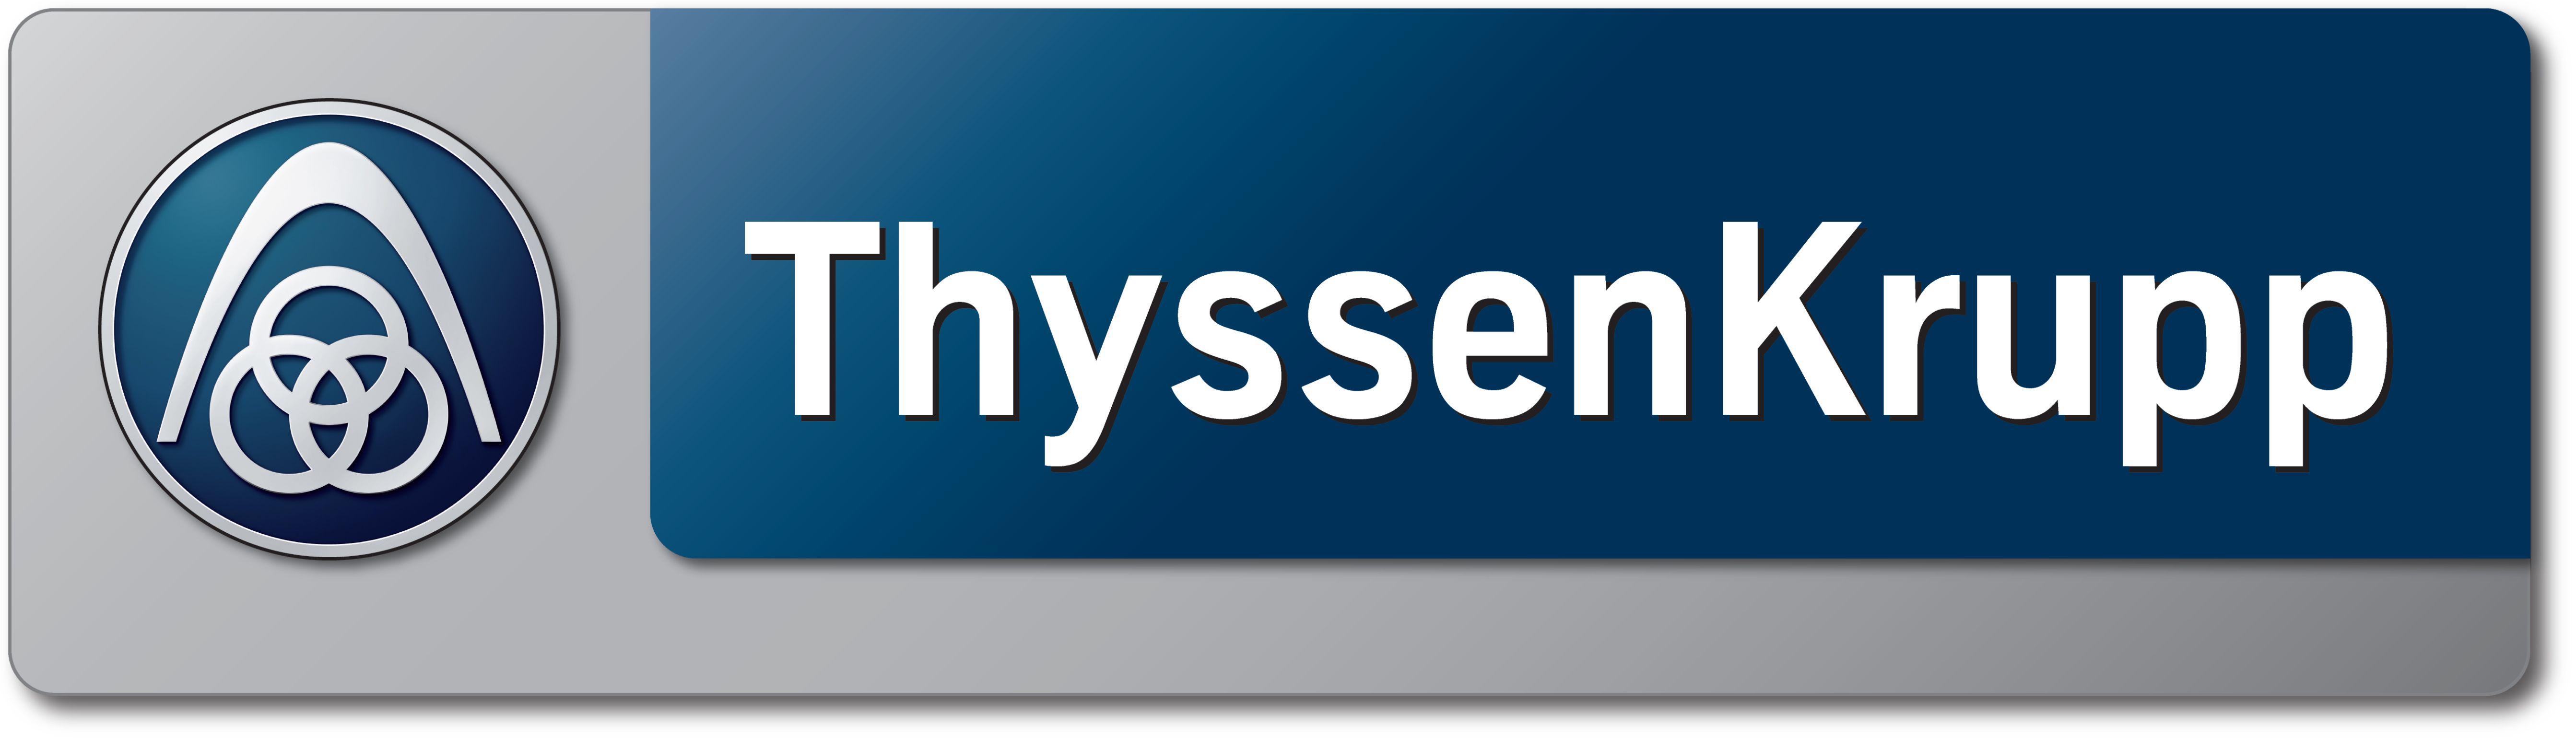 ThyssenKrupp Logo - 